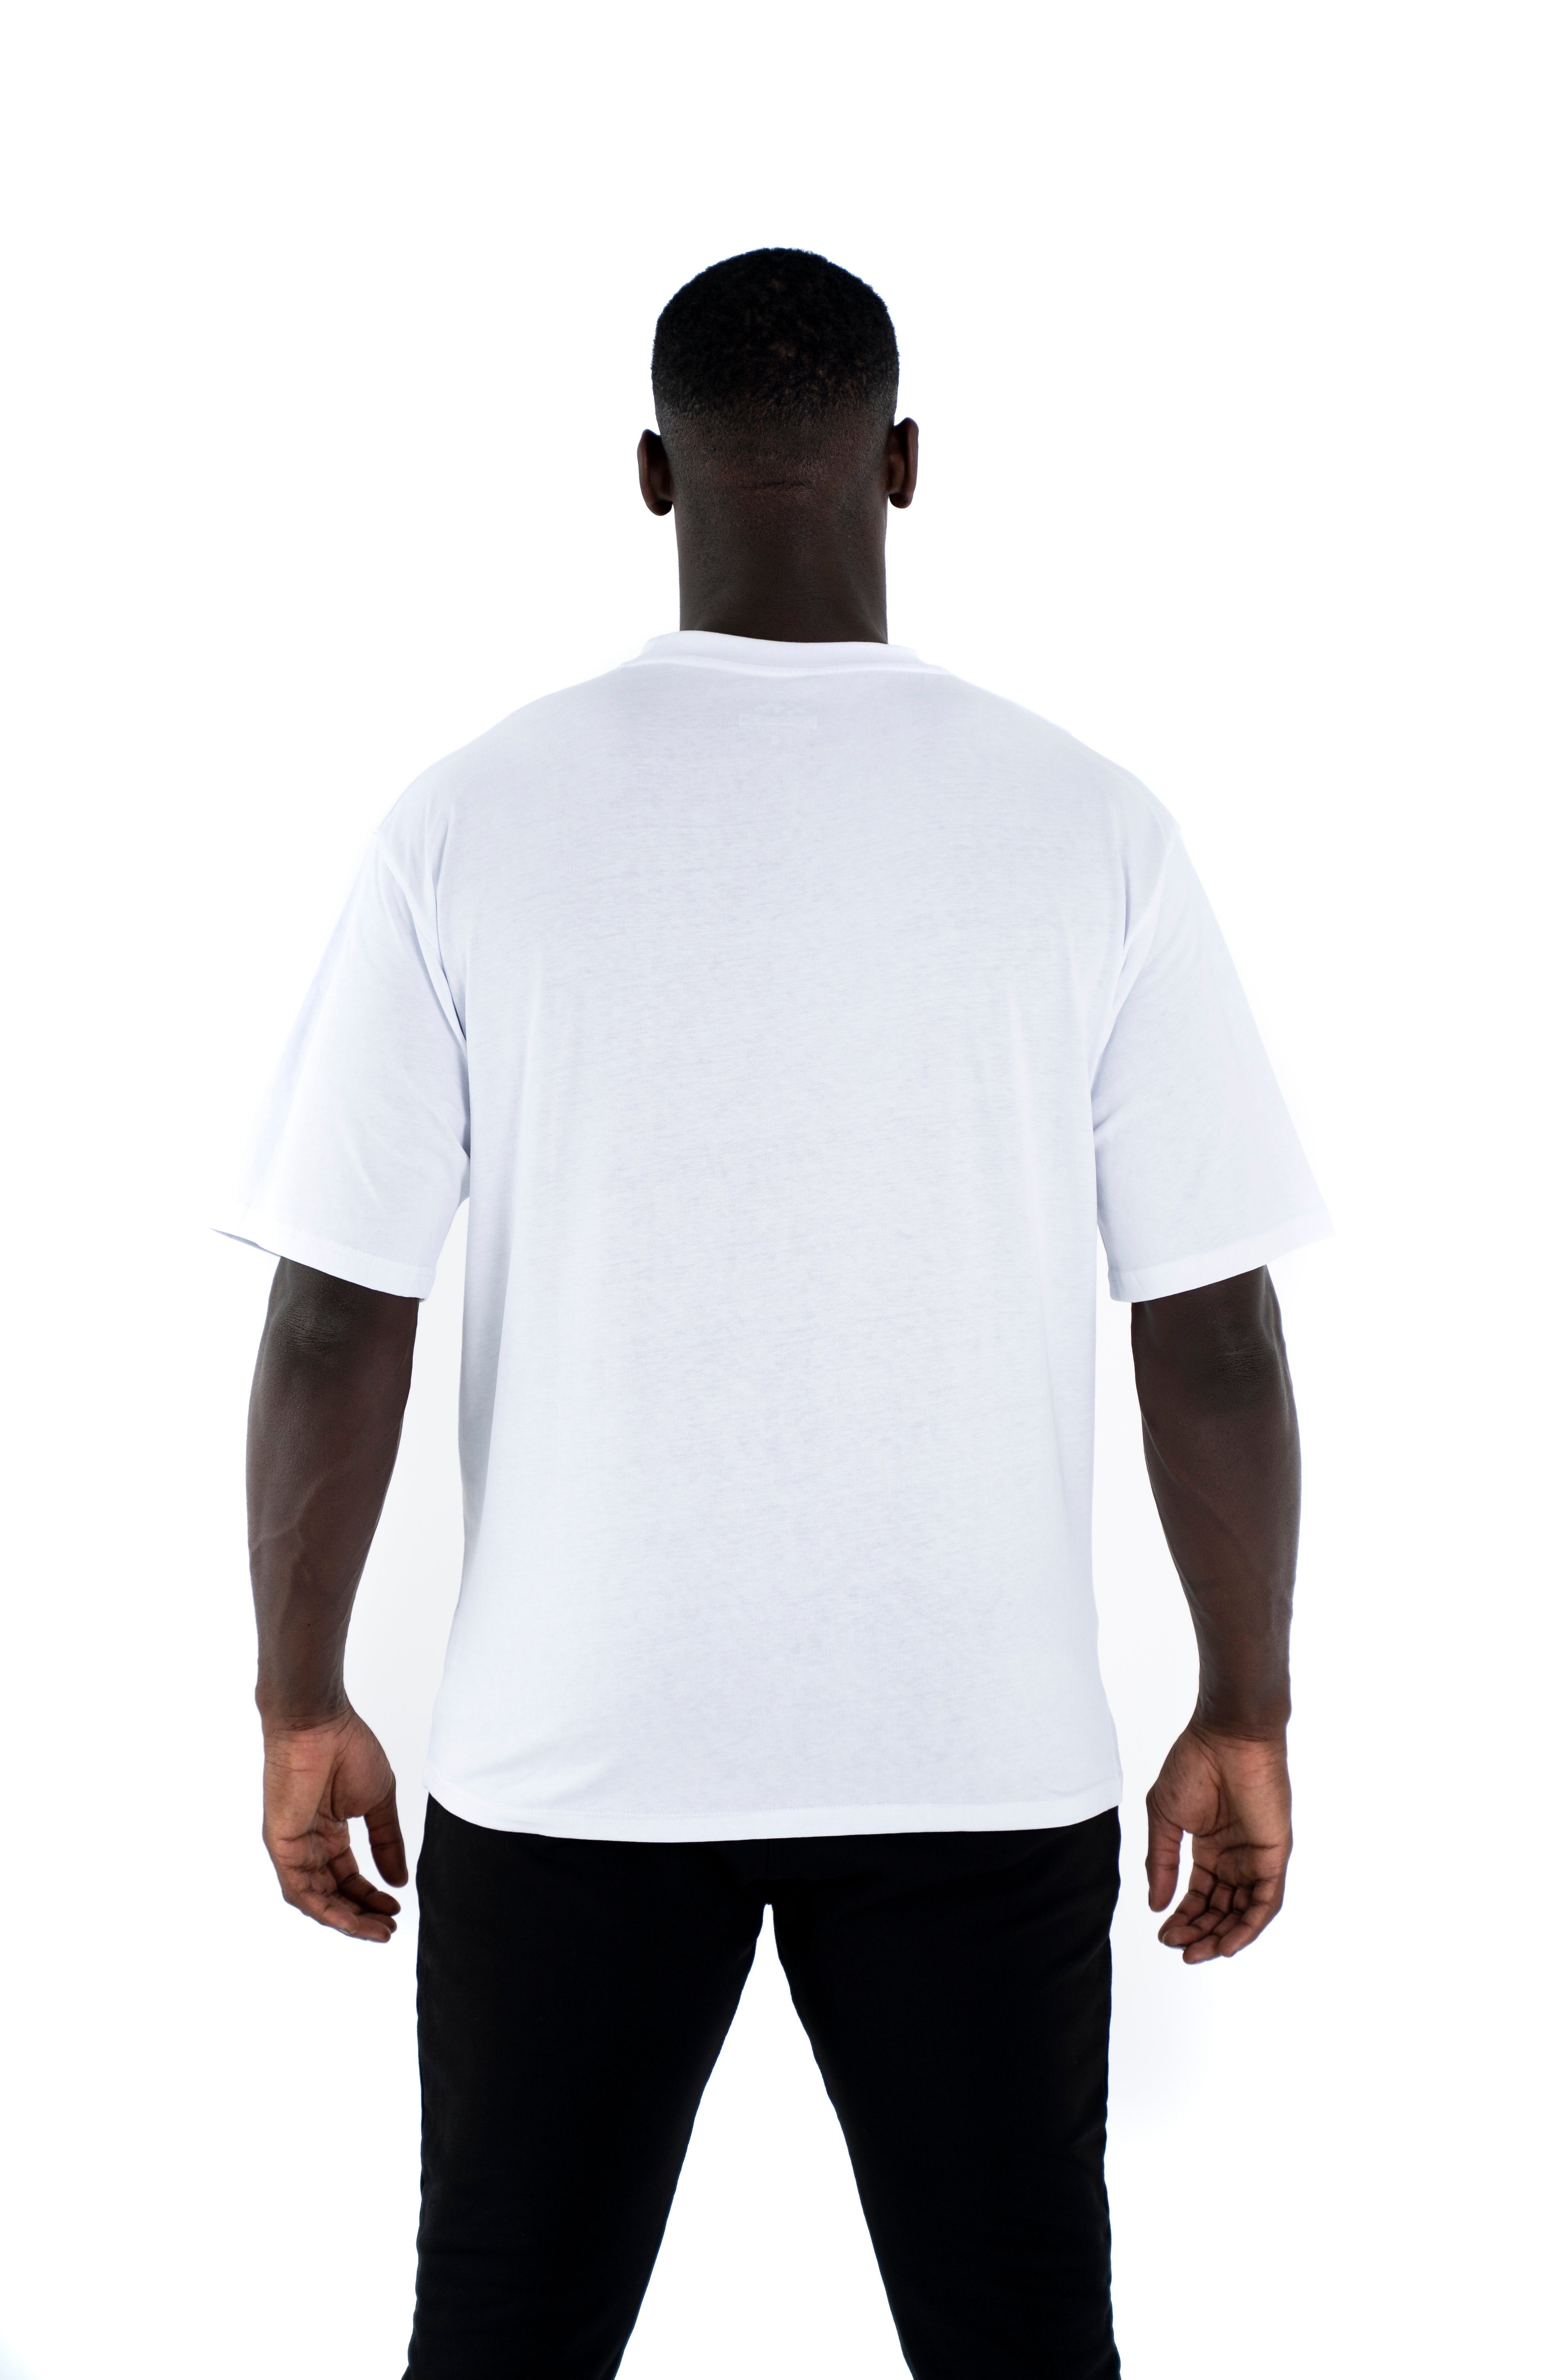 Universum Sportwear T-Shirt Rundhalsausschnitt, T-Shirt Modern Baumwoll Shirt, Cotton Weiß 100% Oversize C-Neck